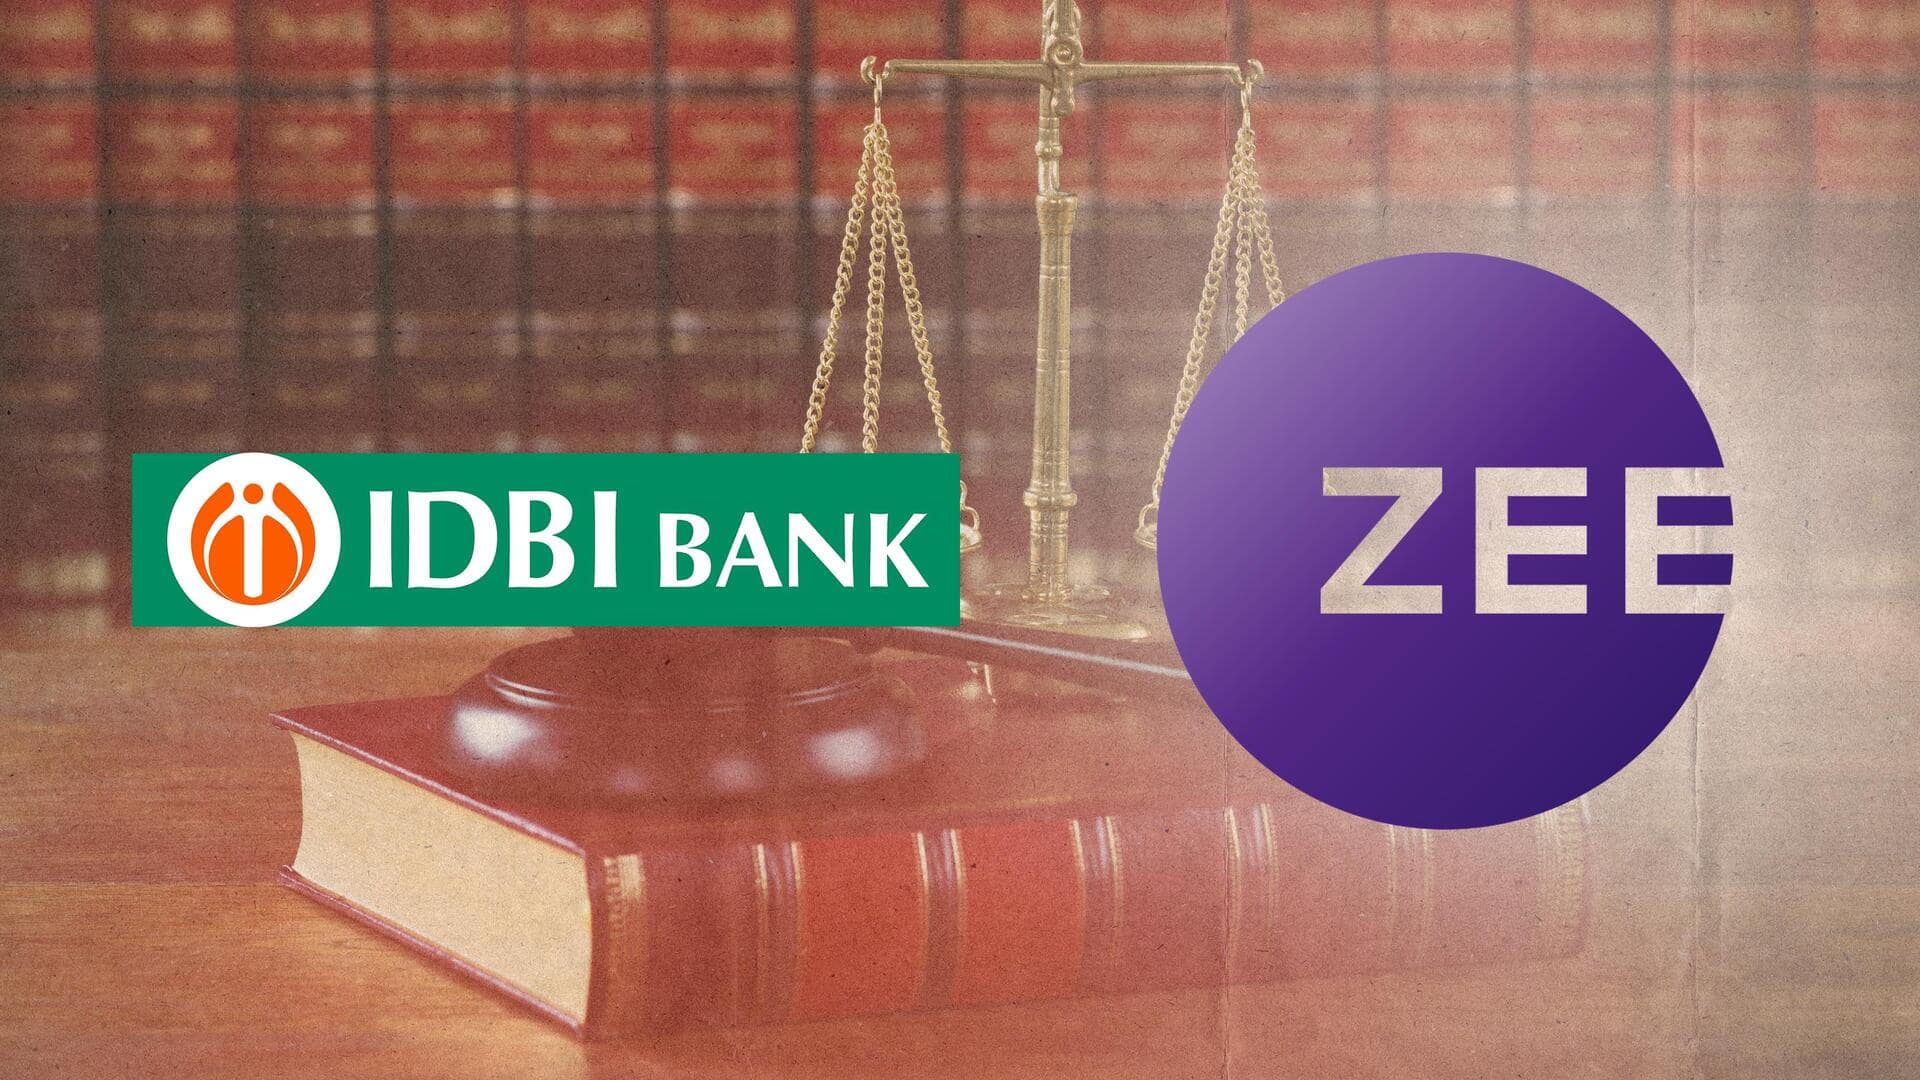 NCLAT accepts IDBI Bank's insolvency plea against ZEEL